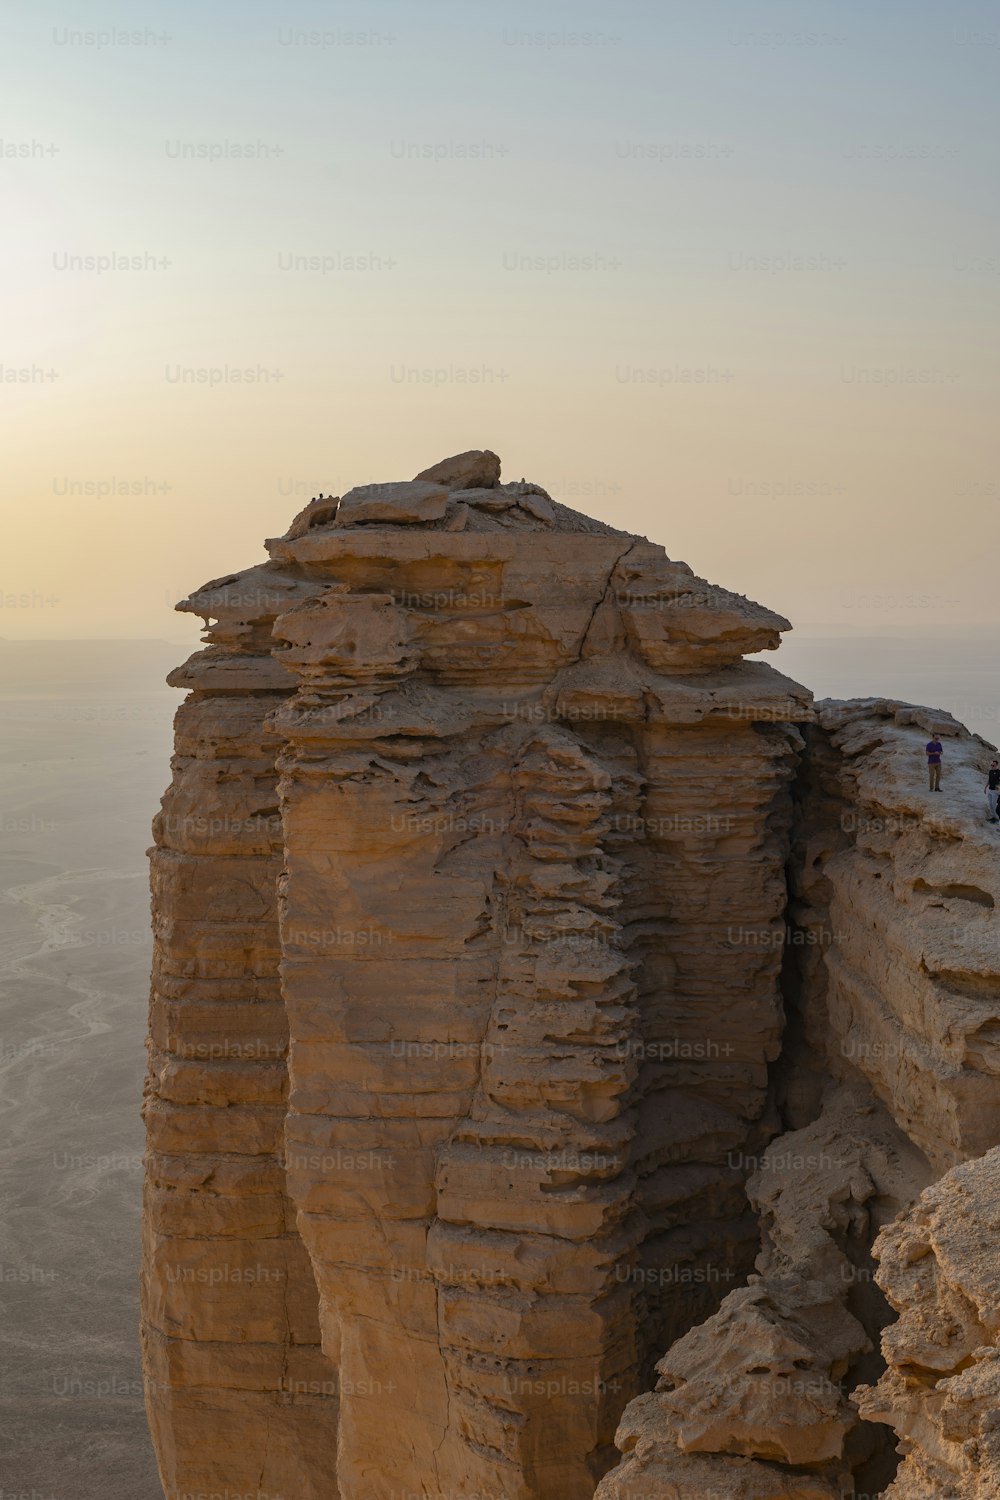 Riad, 13. November 2020. Der Rand der Welt (Jebel Fihrayn) ist ein dramatisches geologisches Wunder in der Steinwüste nordwestlich von Riad, Saudi-Arabien.